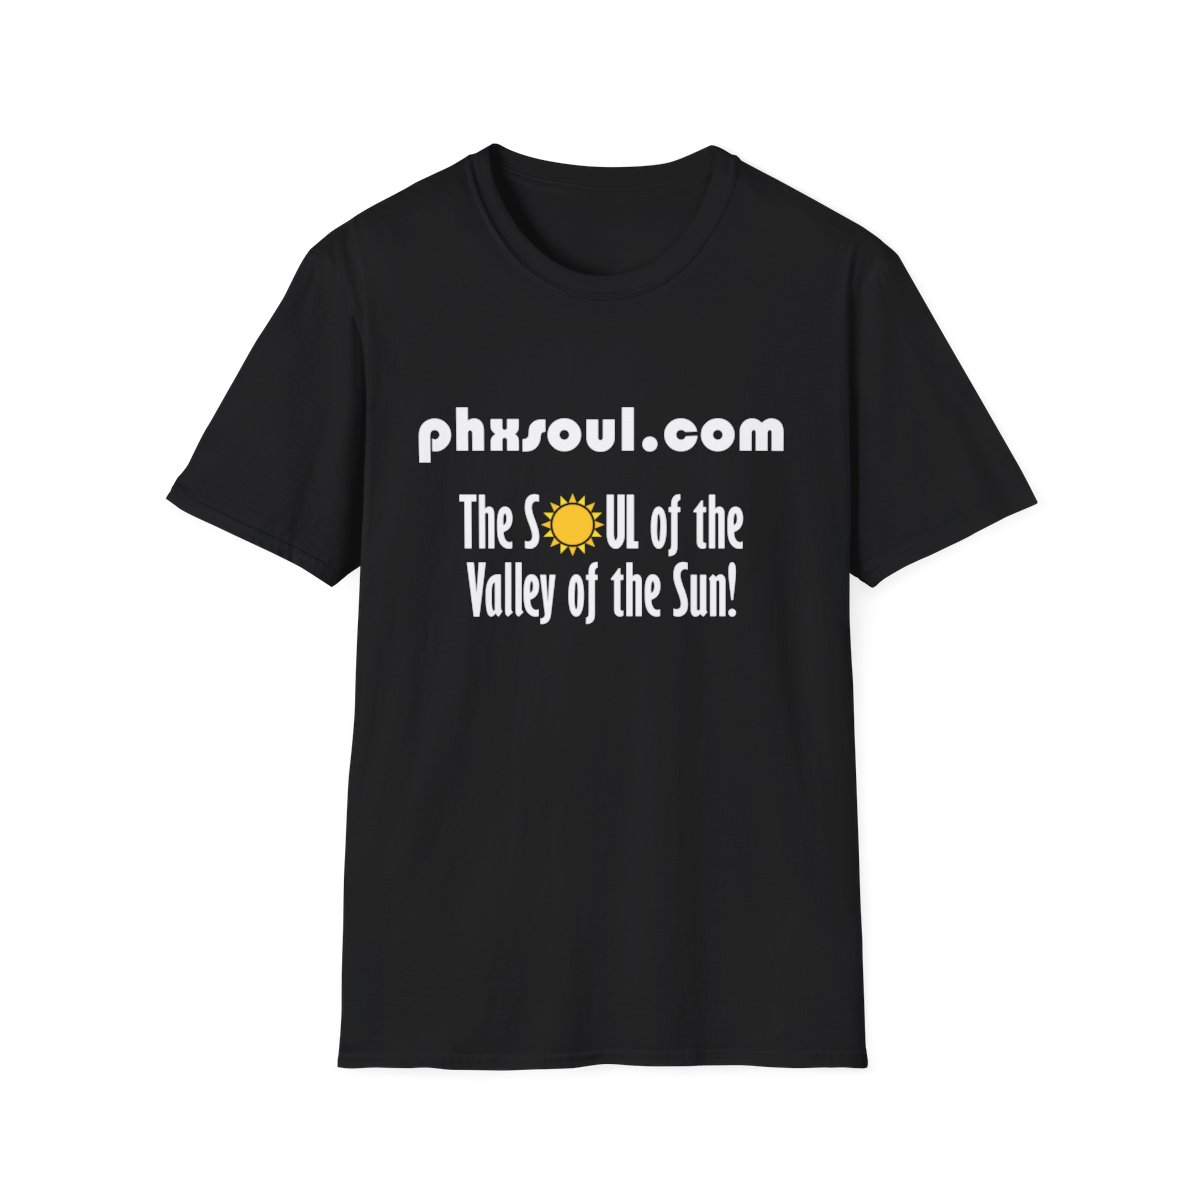 Adult PhxSoul.com Unisex Softstyle Black T-Shirt product thumbnail image